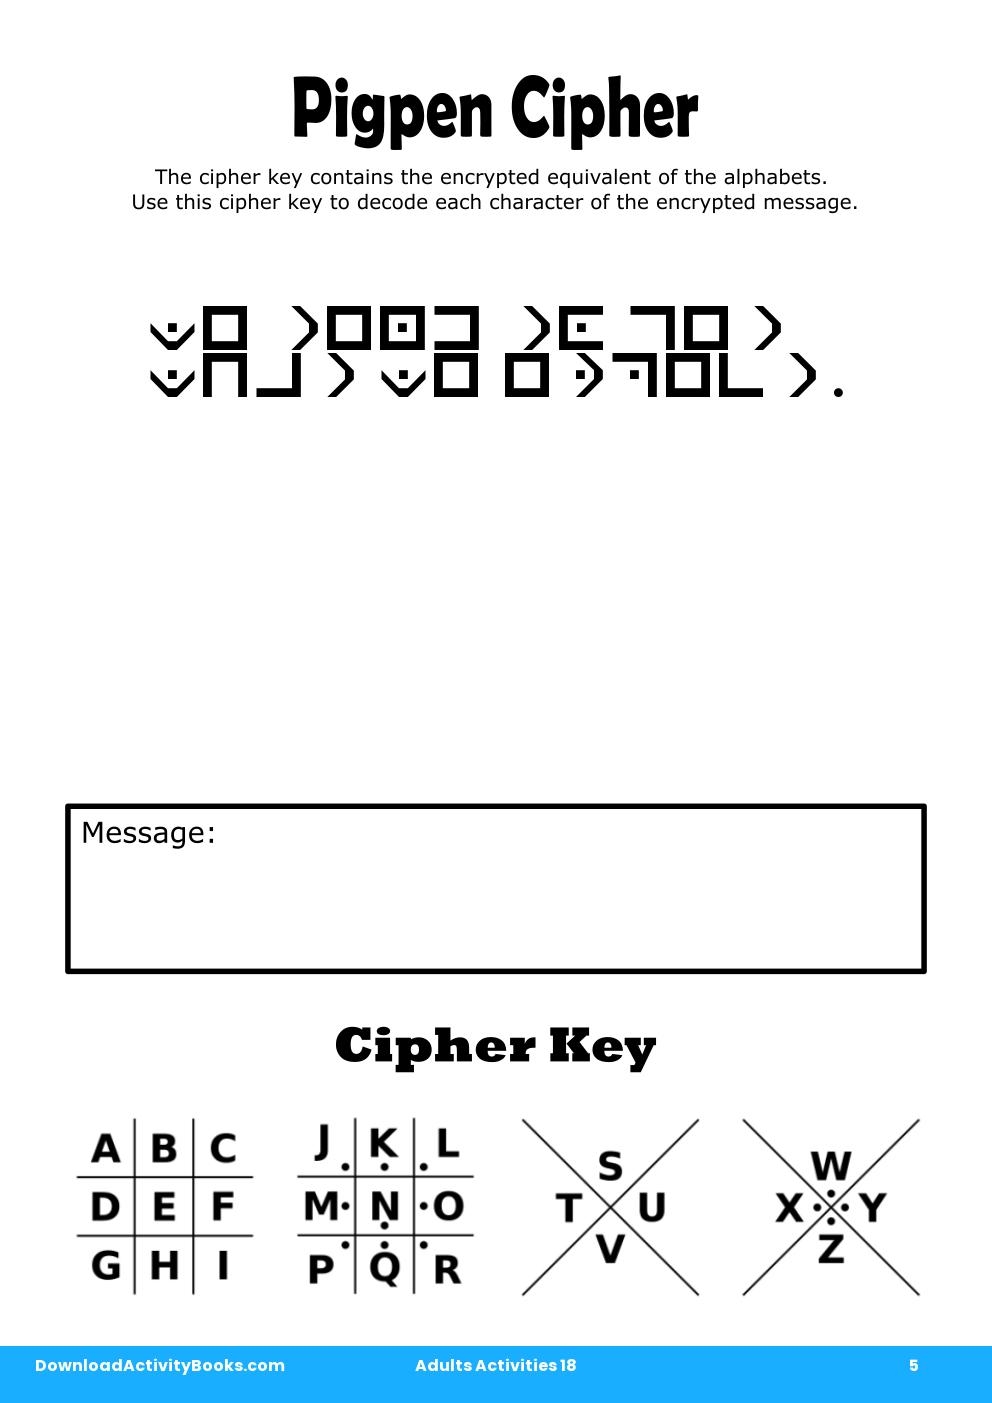 Pigpen Cipher in Adults Activities 18